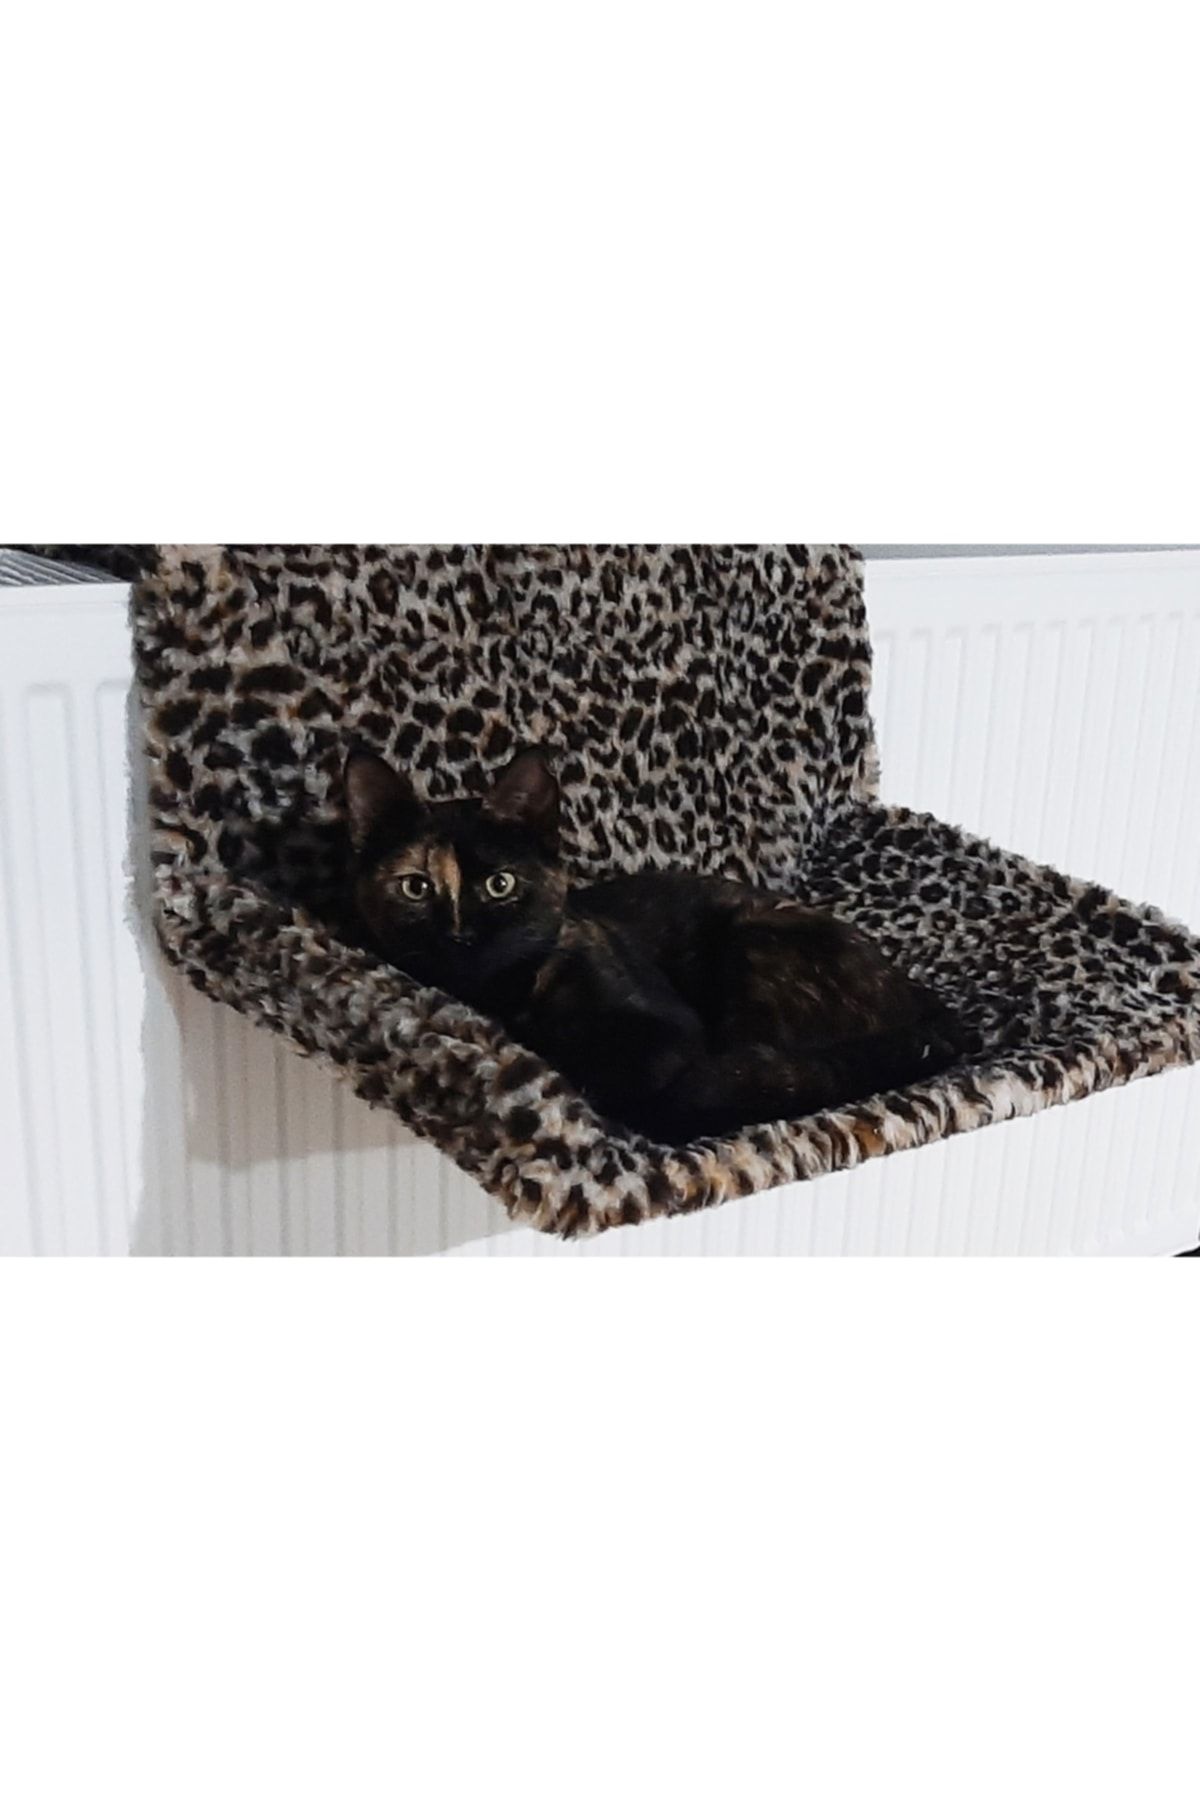 Patili Evler Kedi Yatağı Petek Askılı Pelüş Kedi Kalorifer Yatağı 35x50 Cm